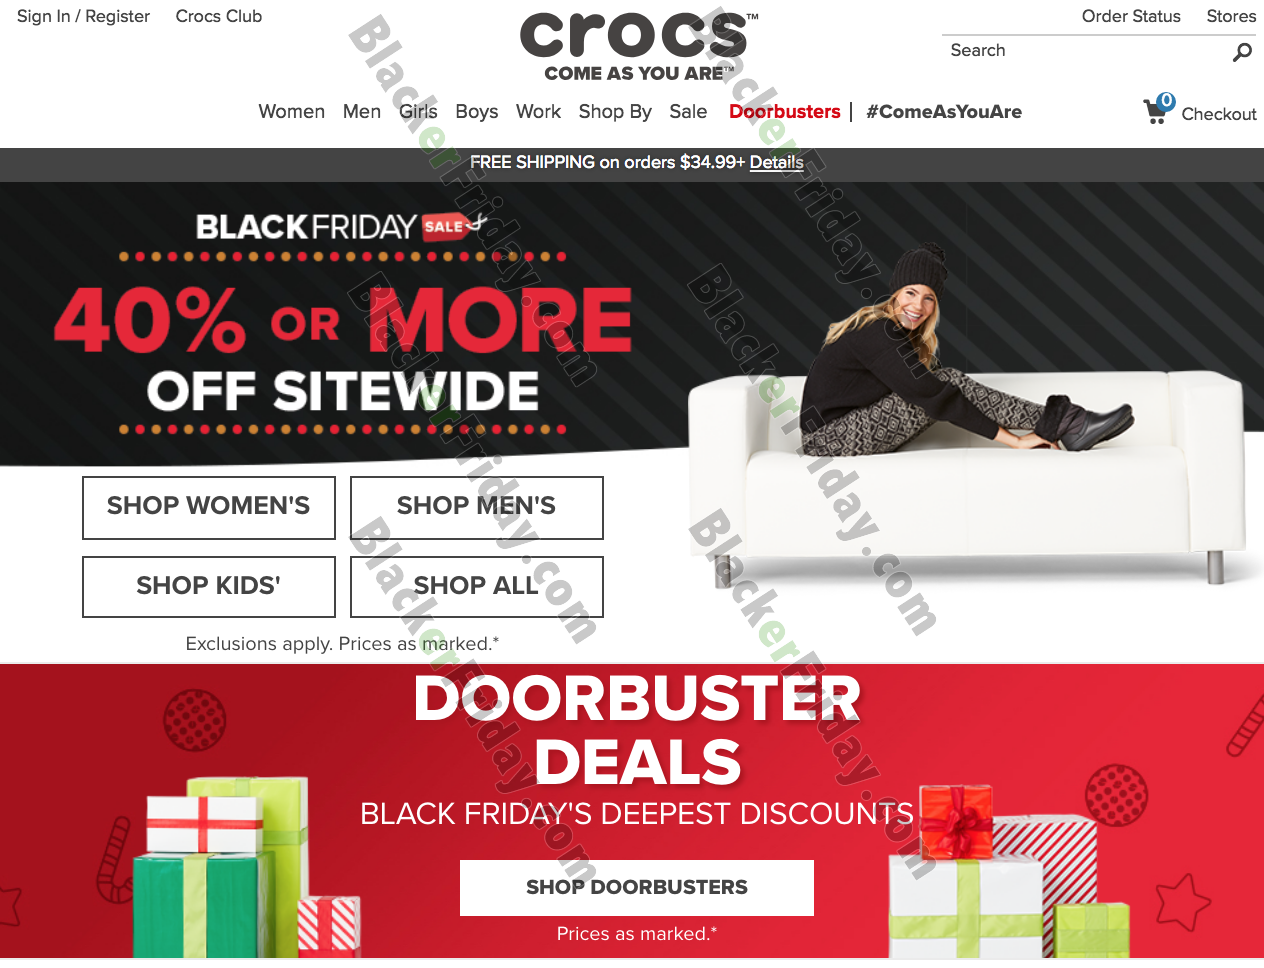 crocs black friday deals 2018